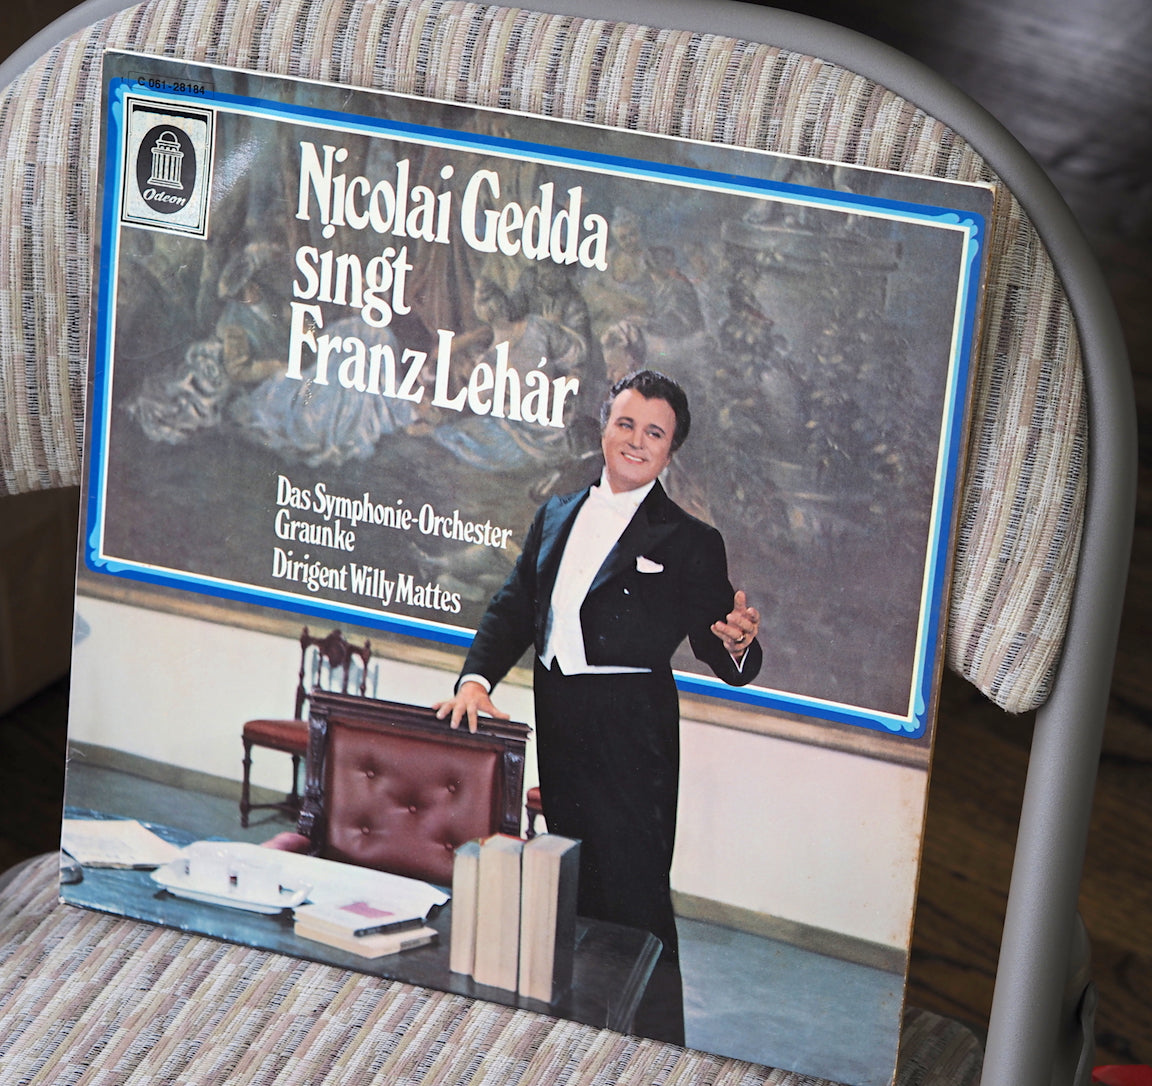 ODE001: Nicolai Gedda SIngs Franz Lehar